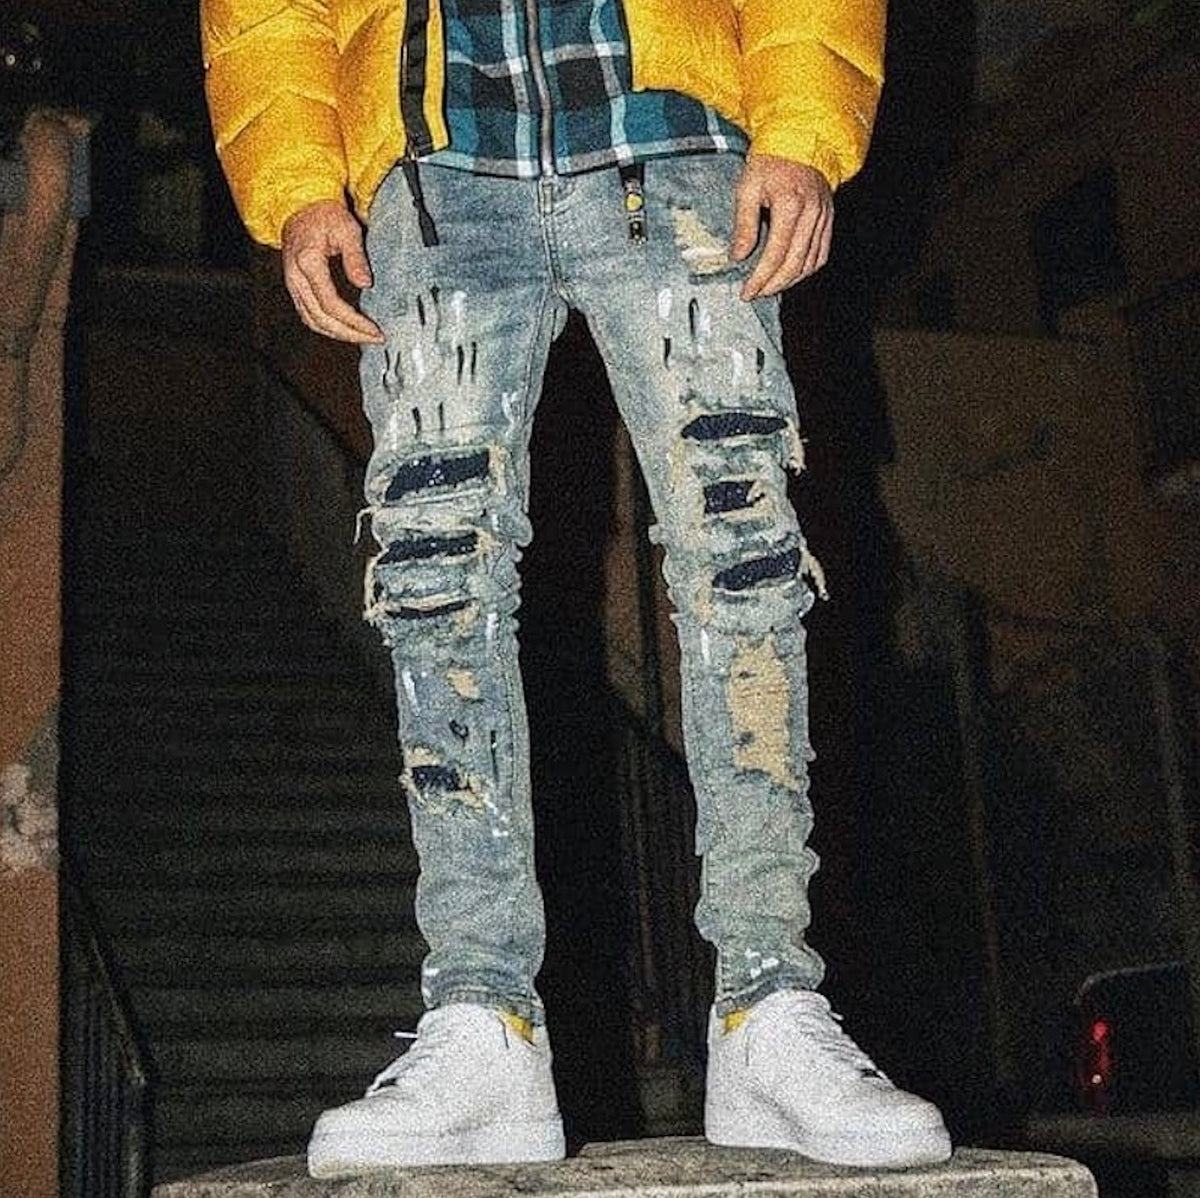 amiri jeans fake